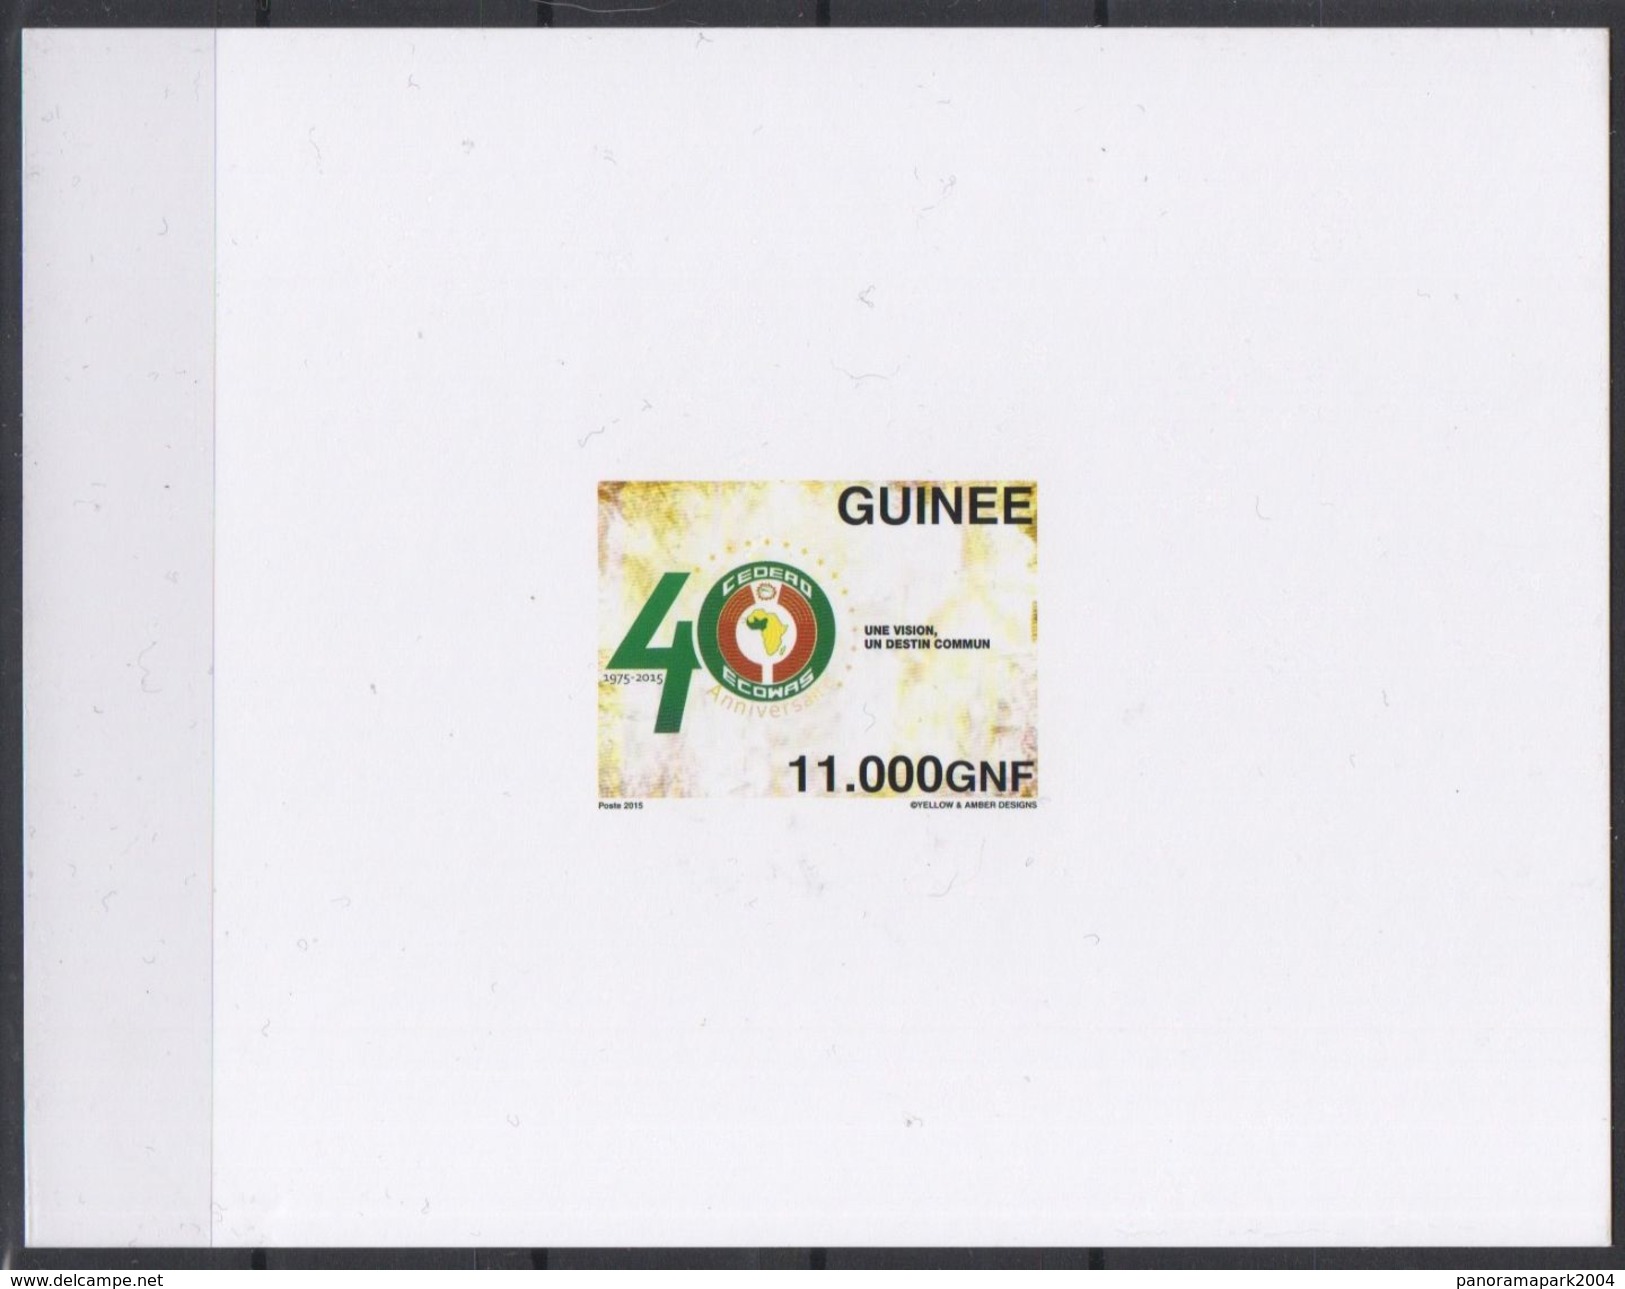 Guinée 2015 Scarce Proof EPREUVE DE LUXE Emission Commune Joint Issue CEDEAO ECOWAS 40 Ans 40 Years - Emisiones Comunes